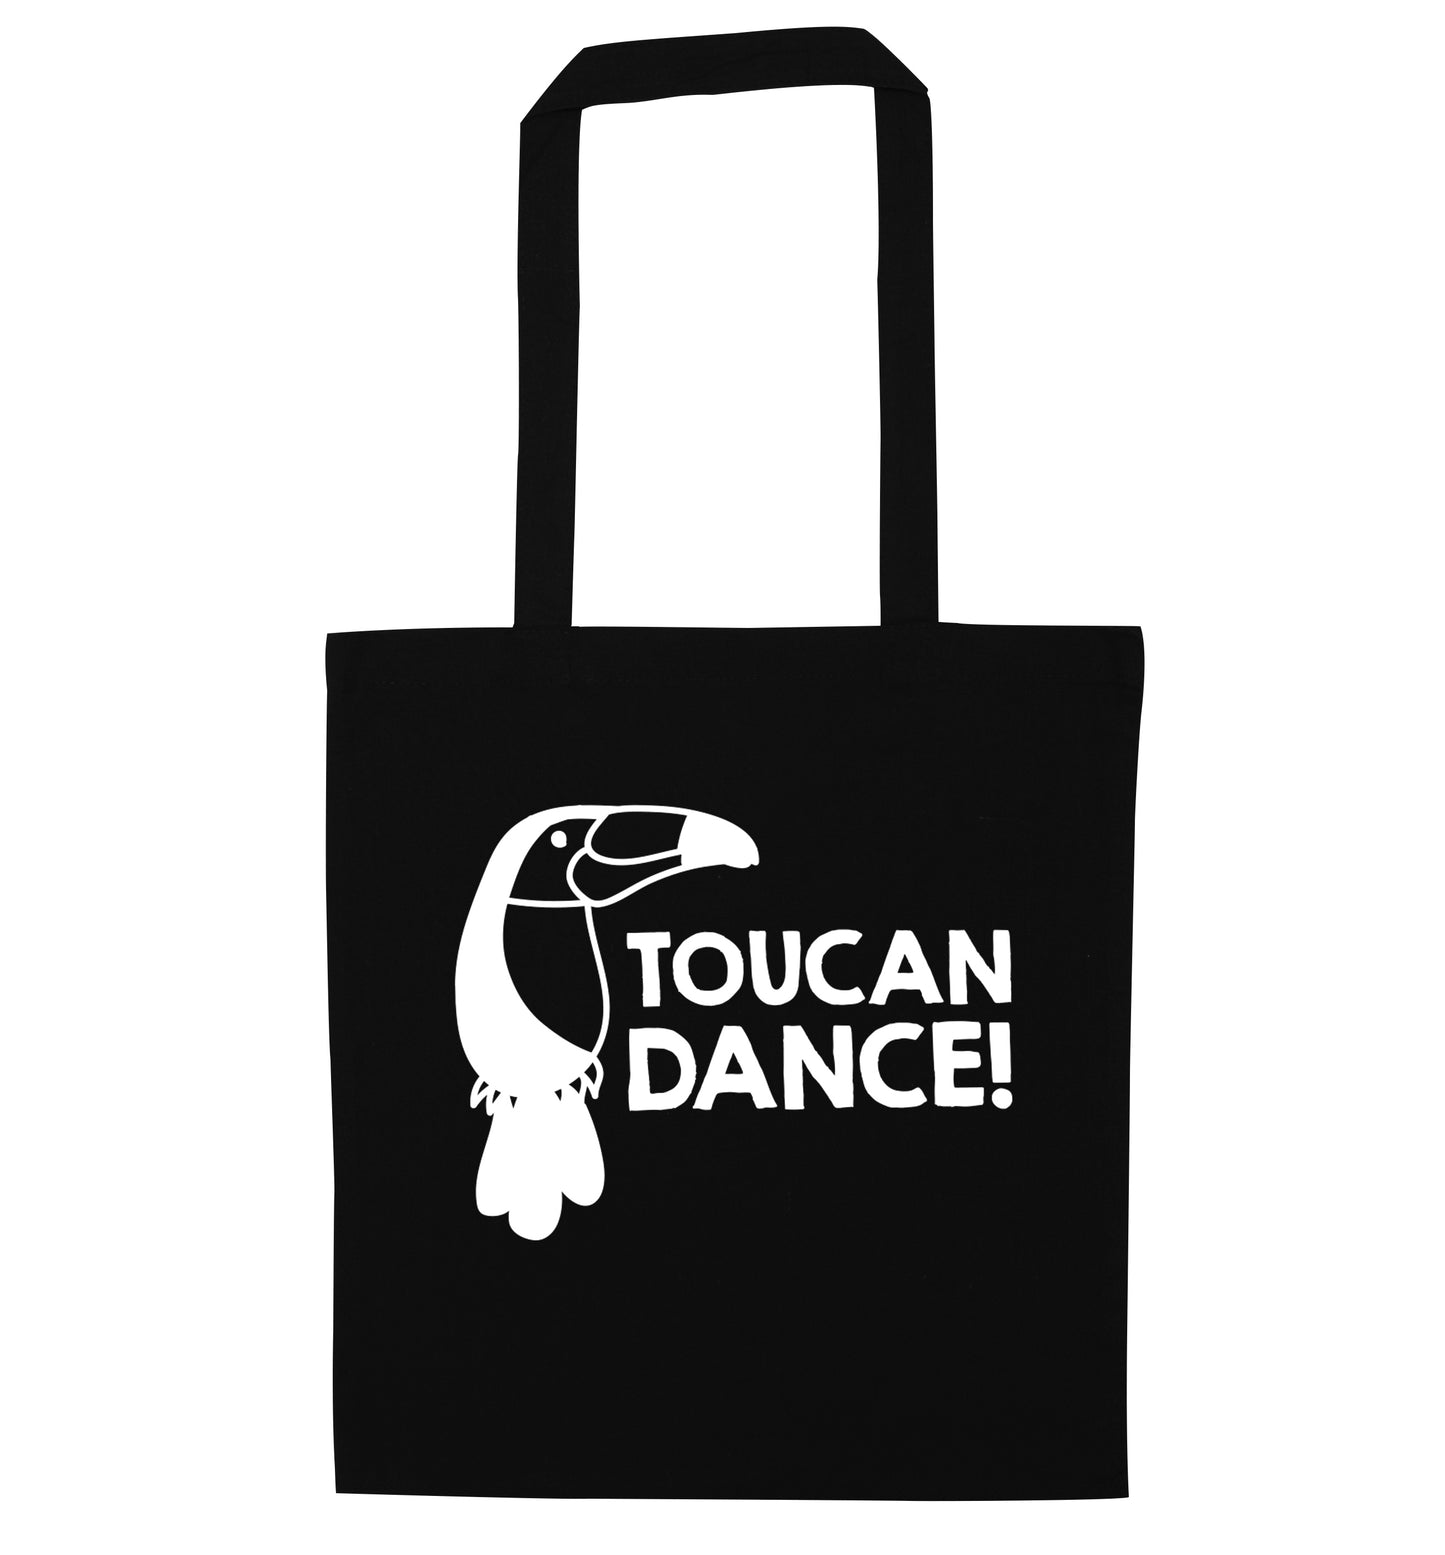 Toucan dance black tote bag